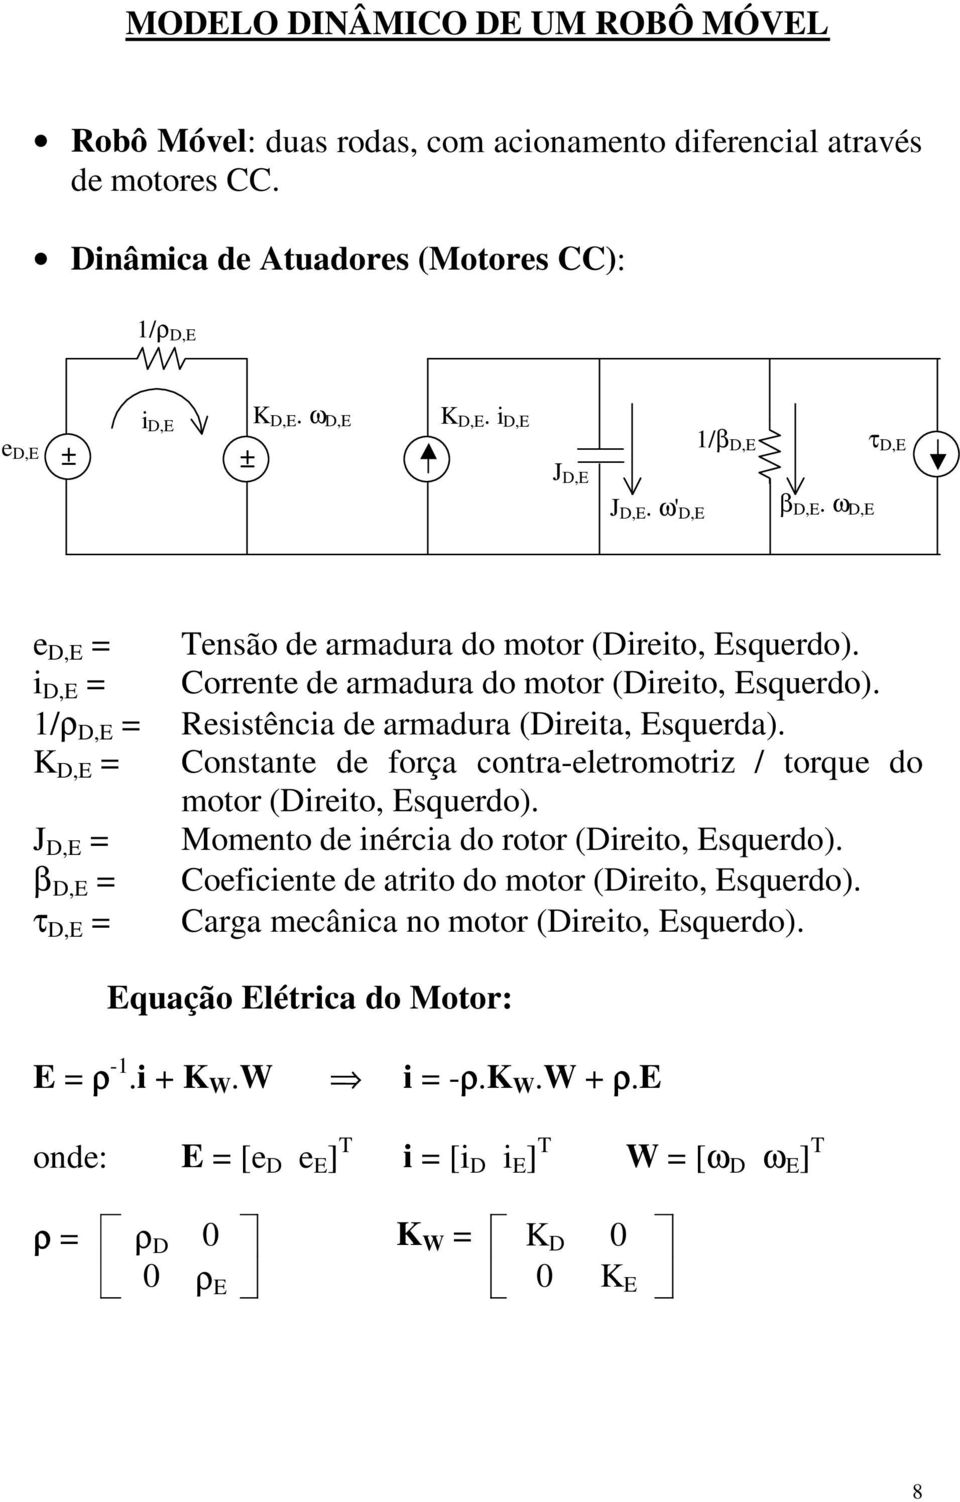 1/ρ D,E = Resistência de armadura (Direita, Esquerda). K D,E = Constante de força contra-eletromotriz / torque do motor (Direito, Esquerdo). J D,E = Momento de inércia do rotor (Direito, Esquerdo).